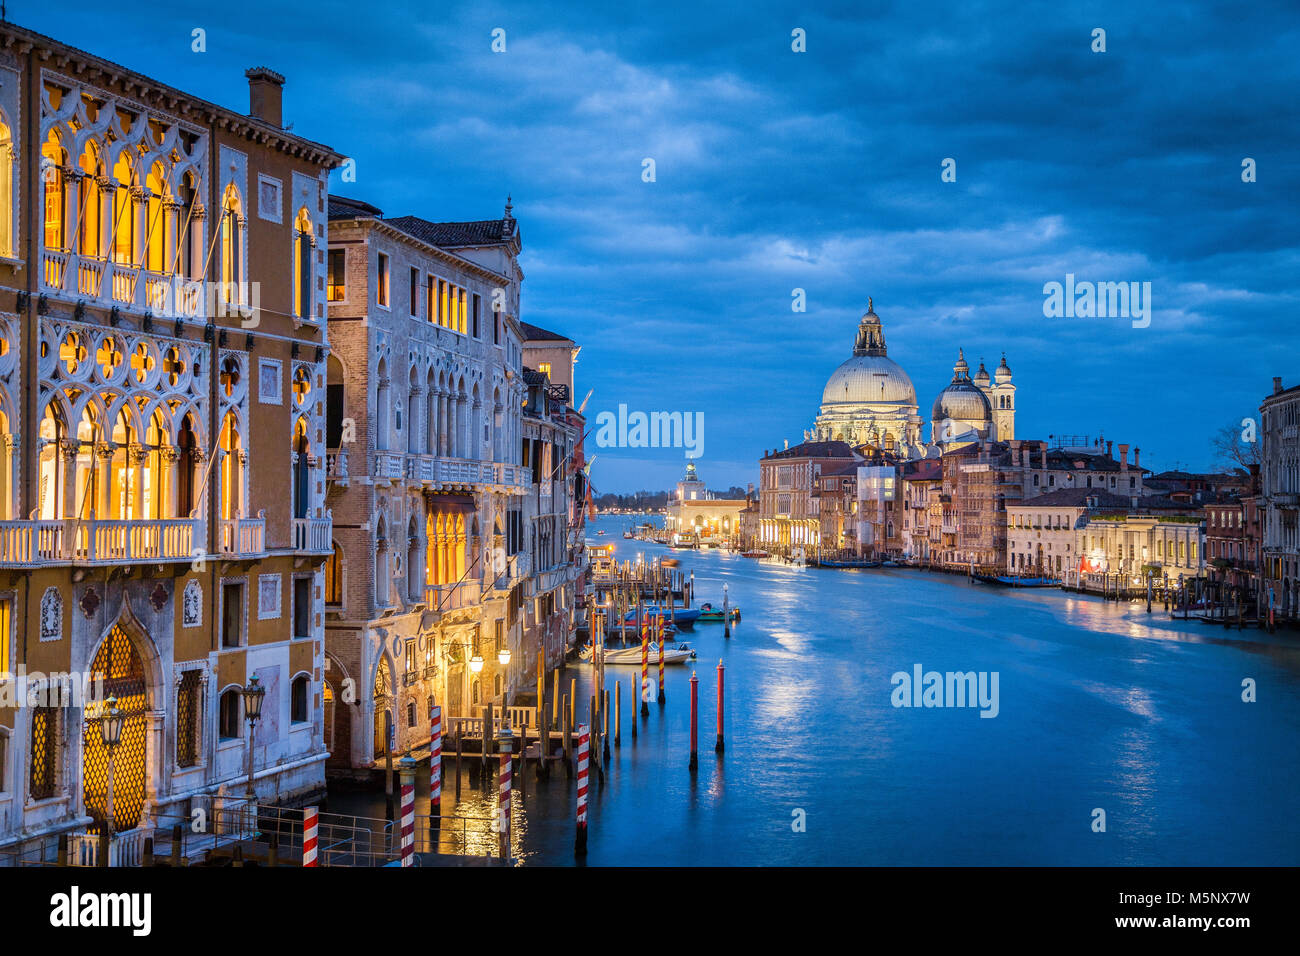 La vue classique du célèbre Canal Grande historique avec la Basilique Santa Maria della Salute en arrière-plan dans le crépuscule, Venise, Italie Banque D'Images